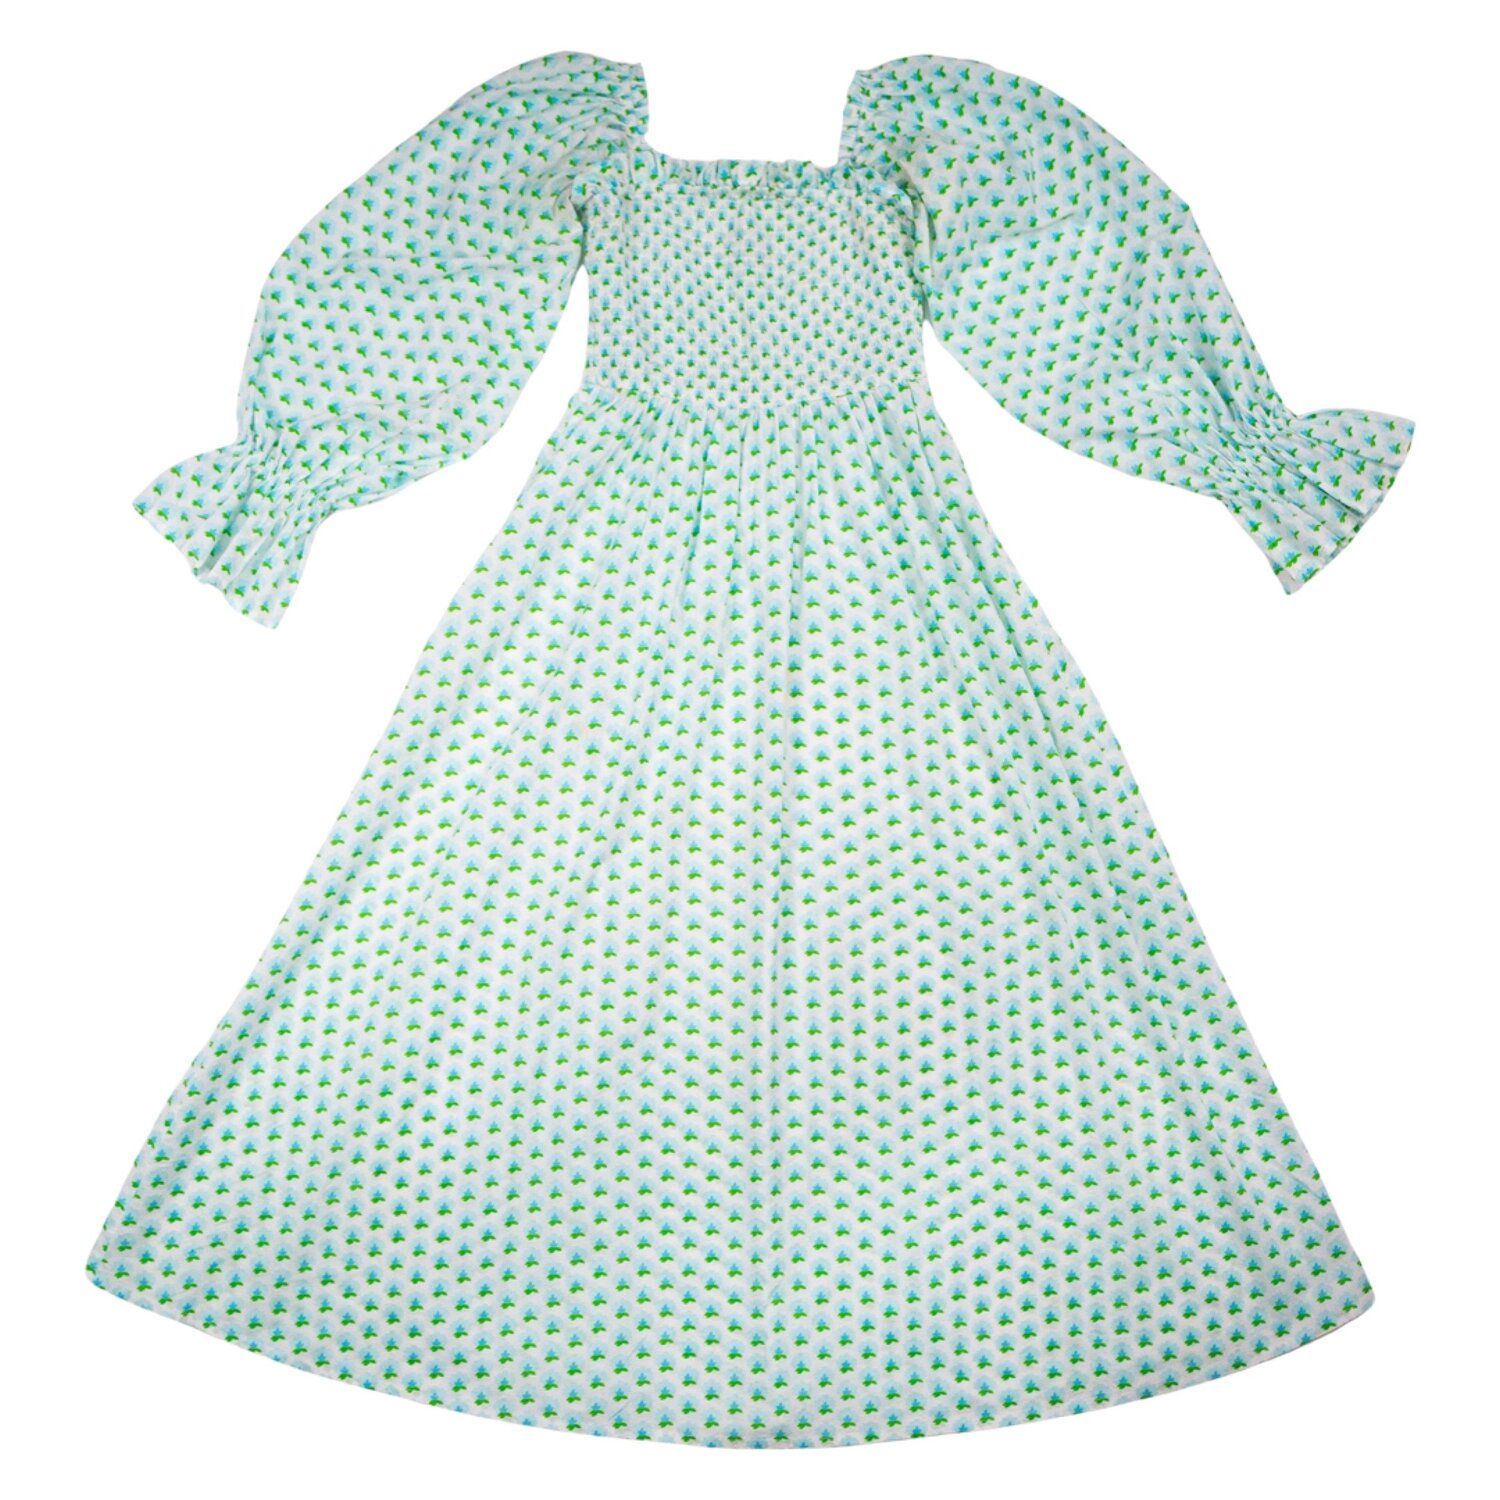 Elizabeth Dress in polka dot bloom print — Elizabeth Wilson | Elizabeth Wilson Designs